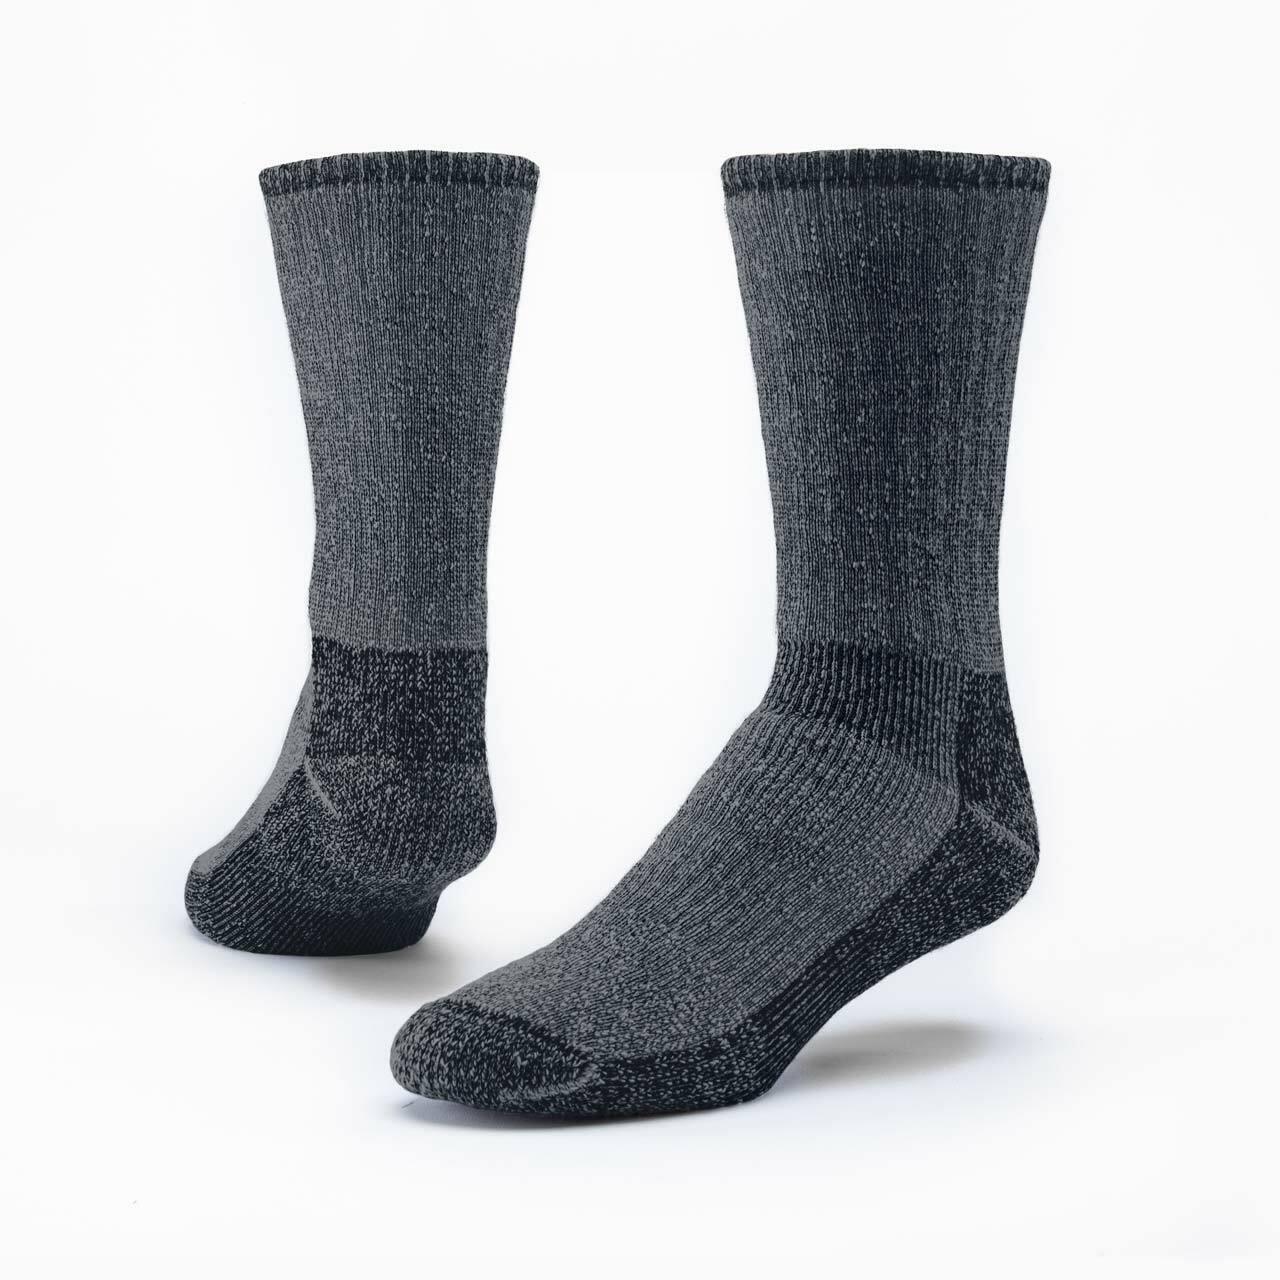 Mountain Hiker Darks, 70% Organic Merino Wool, Crew - Maggie's Organics - The Sock Monster